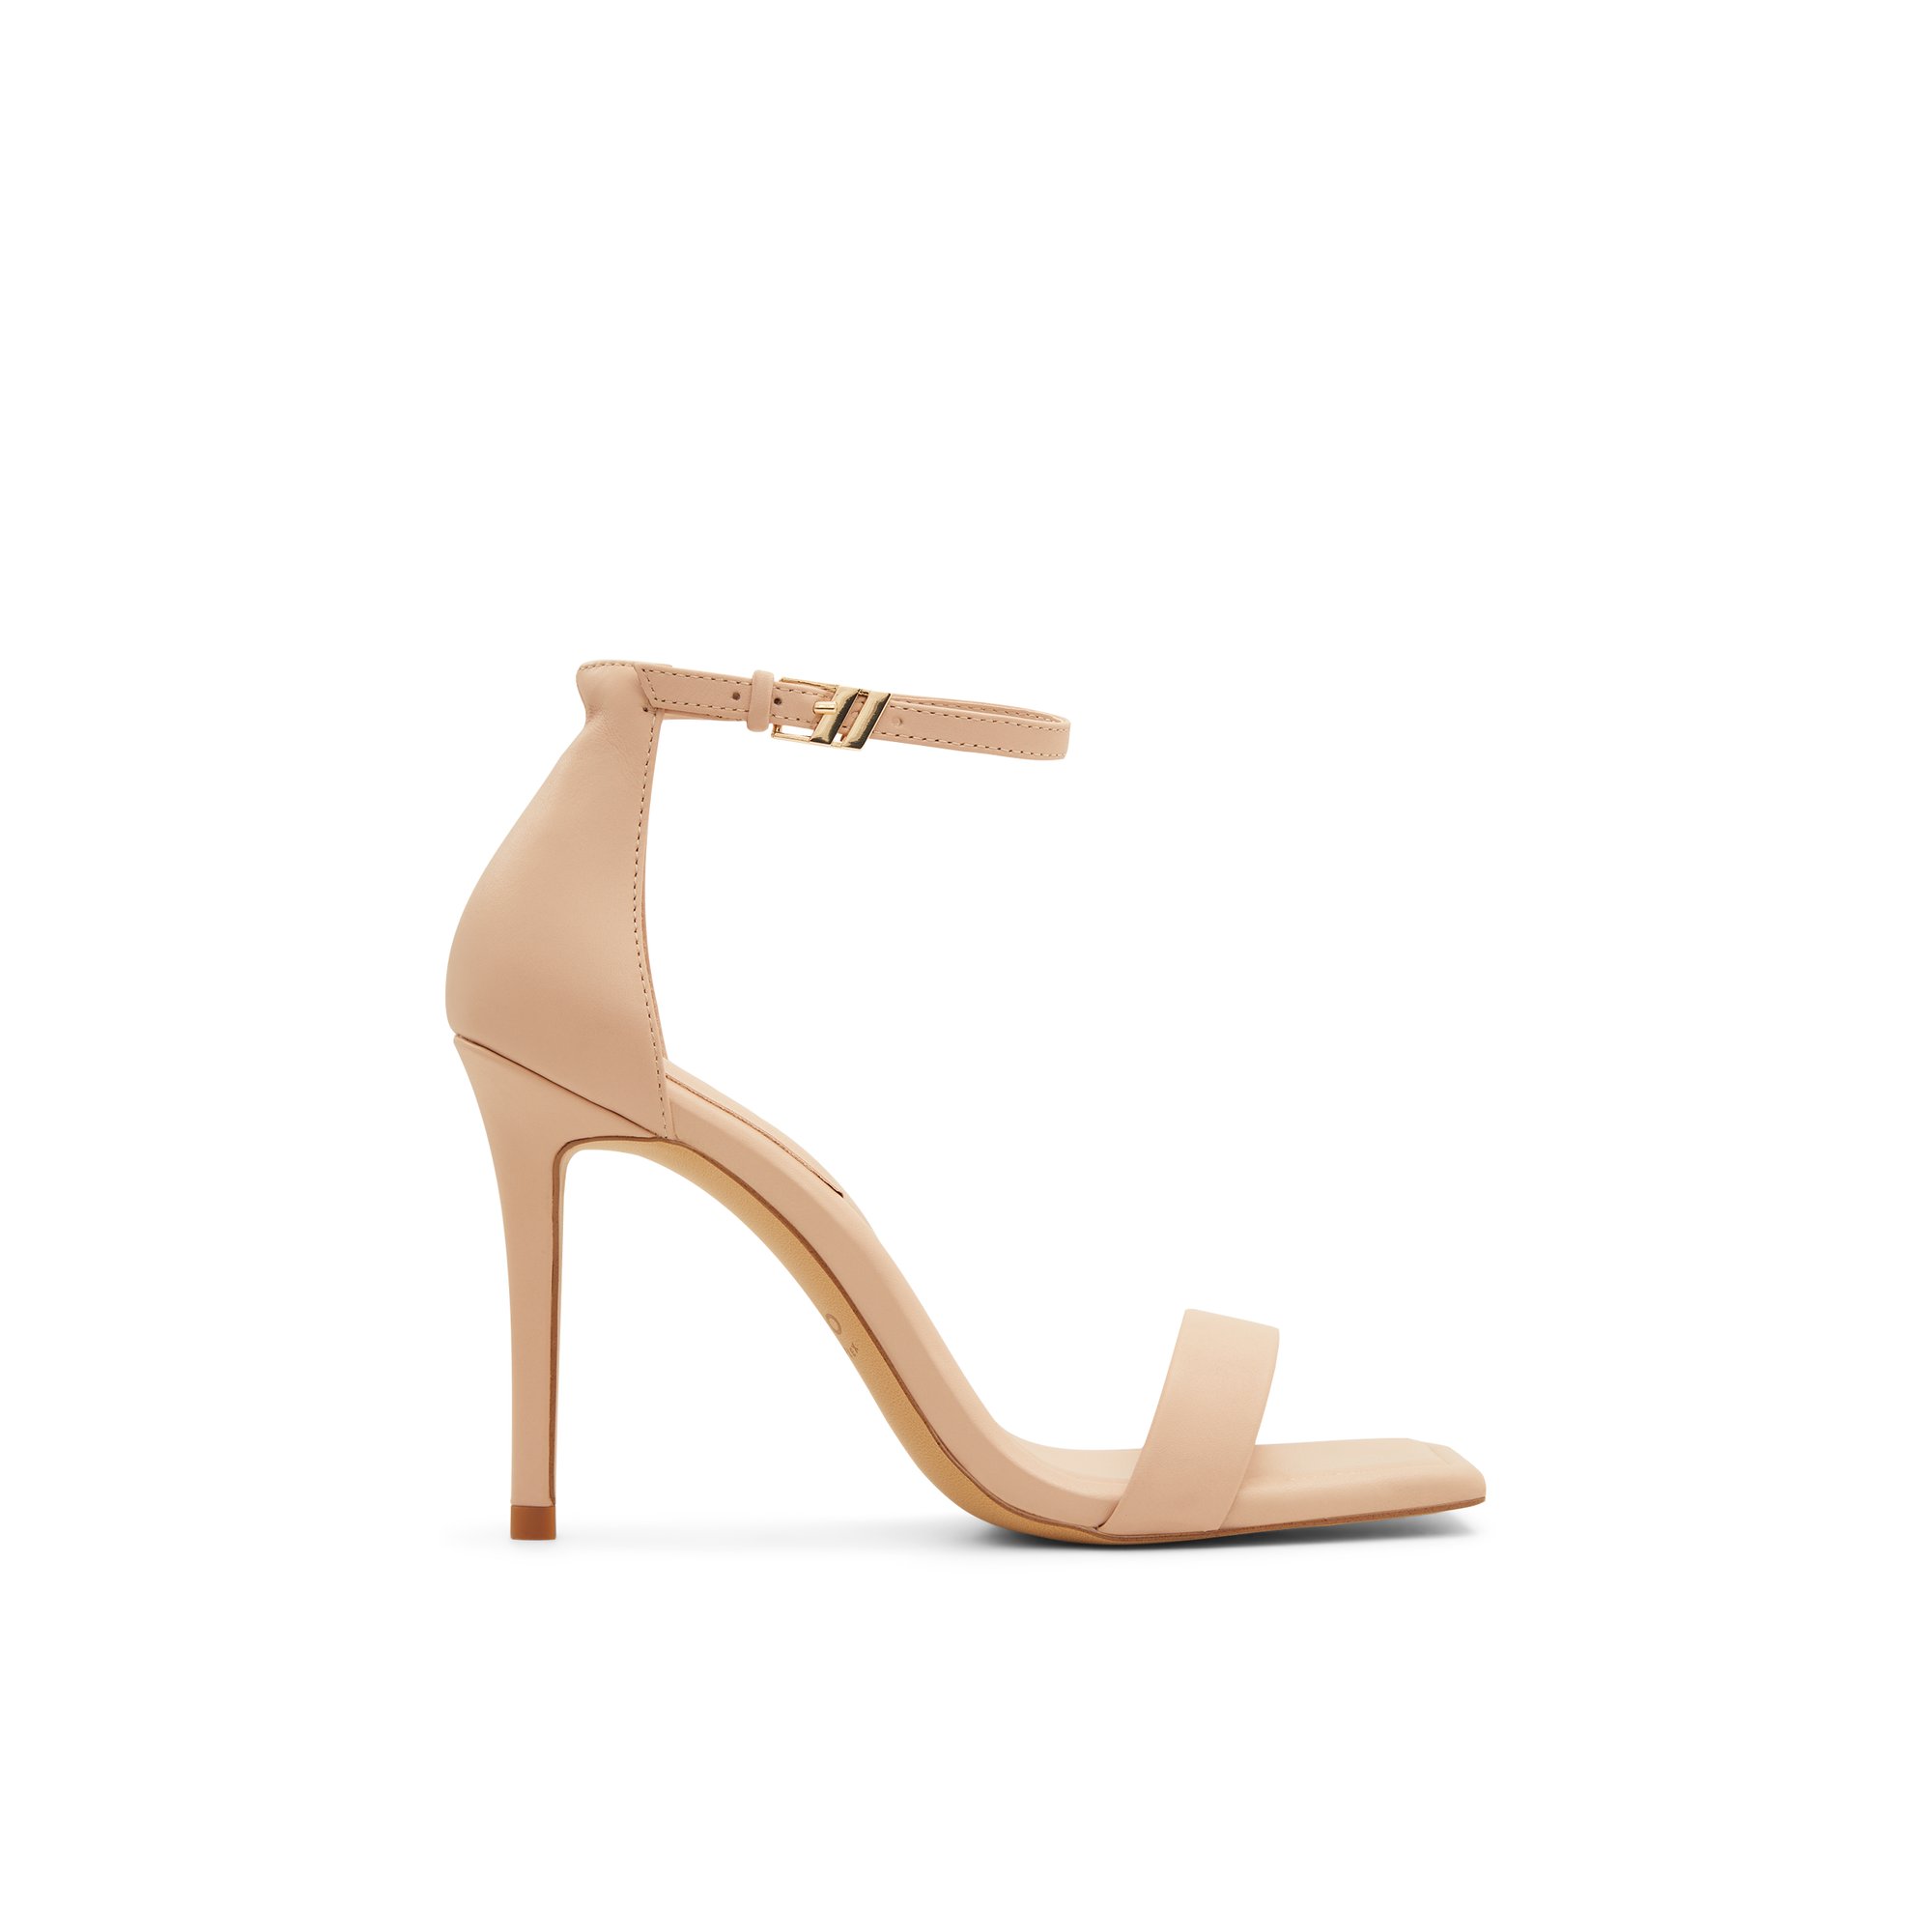 ALDO Renza - Women's Sandals Heeled - Beige